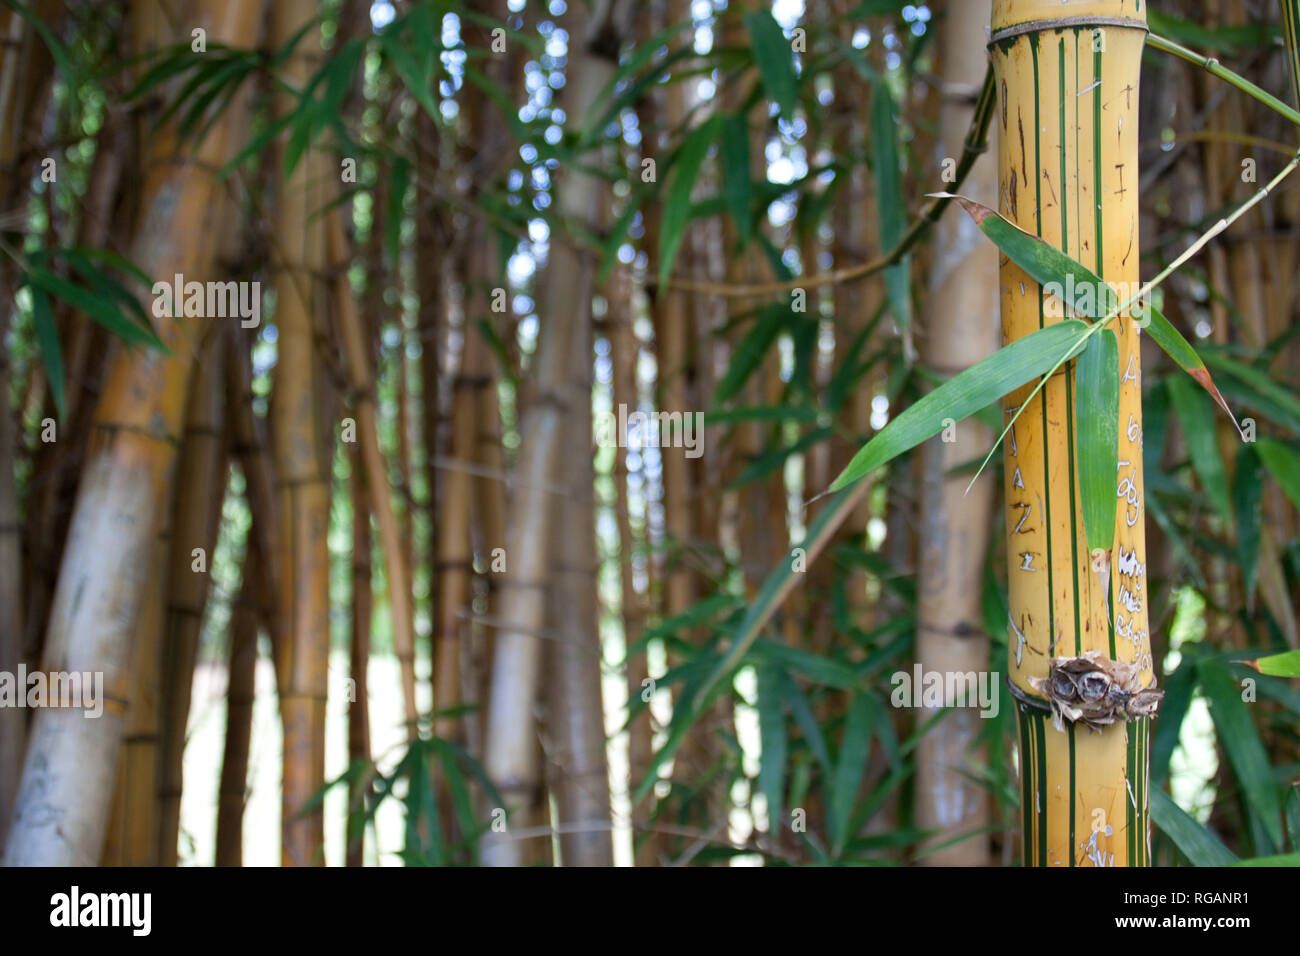 Bamboo Shoots Stock Photo